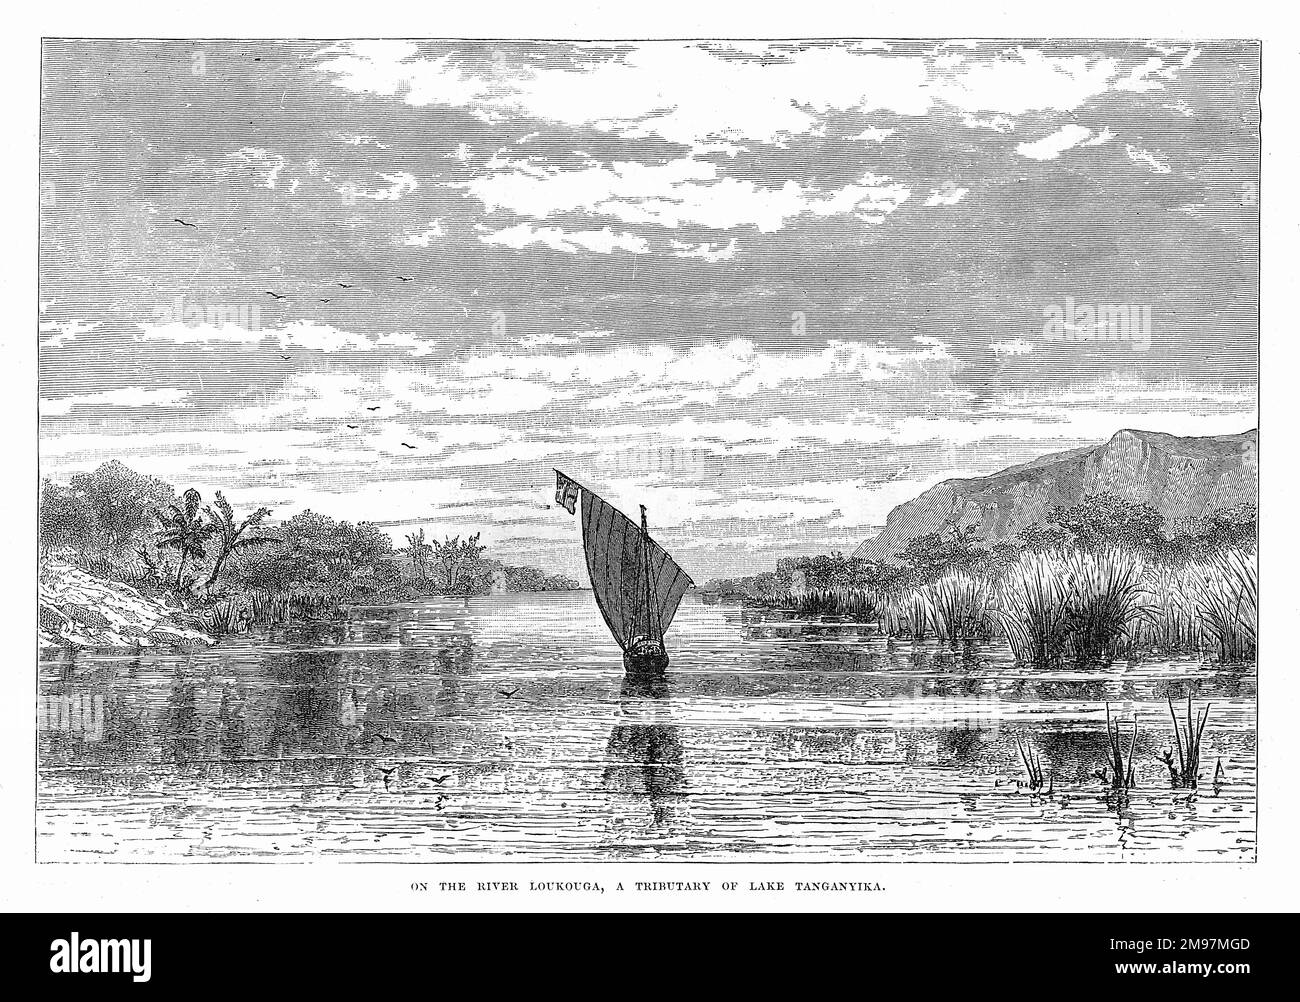 Blick auf ein Segelboot auf dem Fluss Loukouga (Lukuga), einem Nebenfluss des Lake Tanganyika, Afrika, zur Zeit der Expedition von John Hanning Speke, um die Großen Seen Ostafrikas zu entdecken. Stockfoto